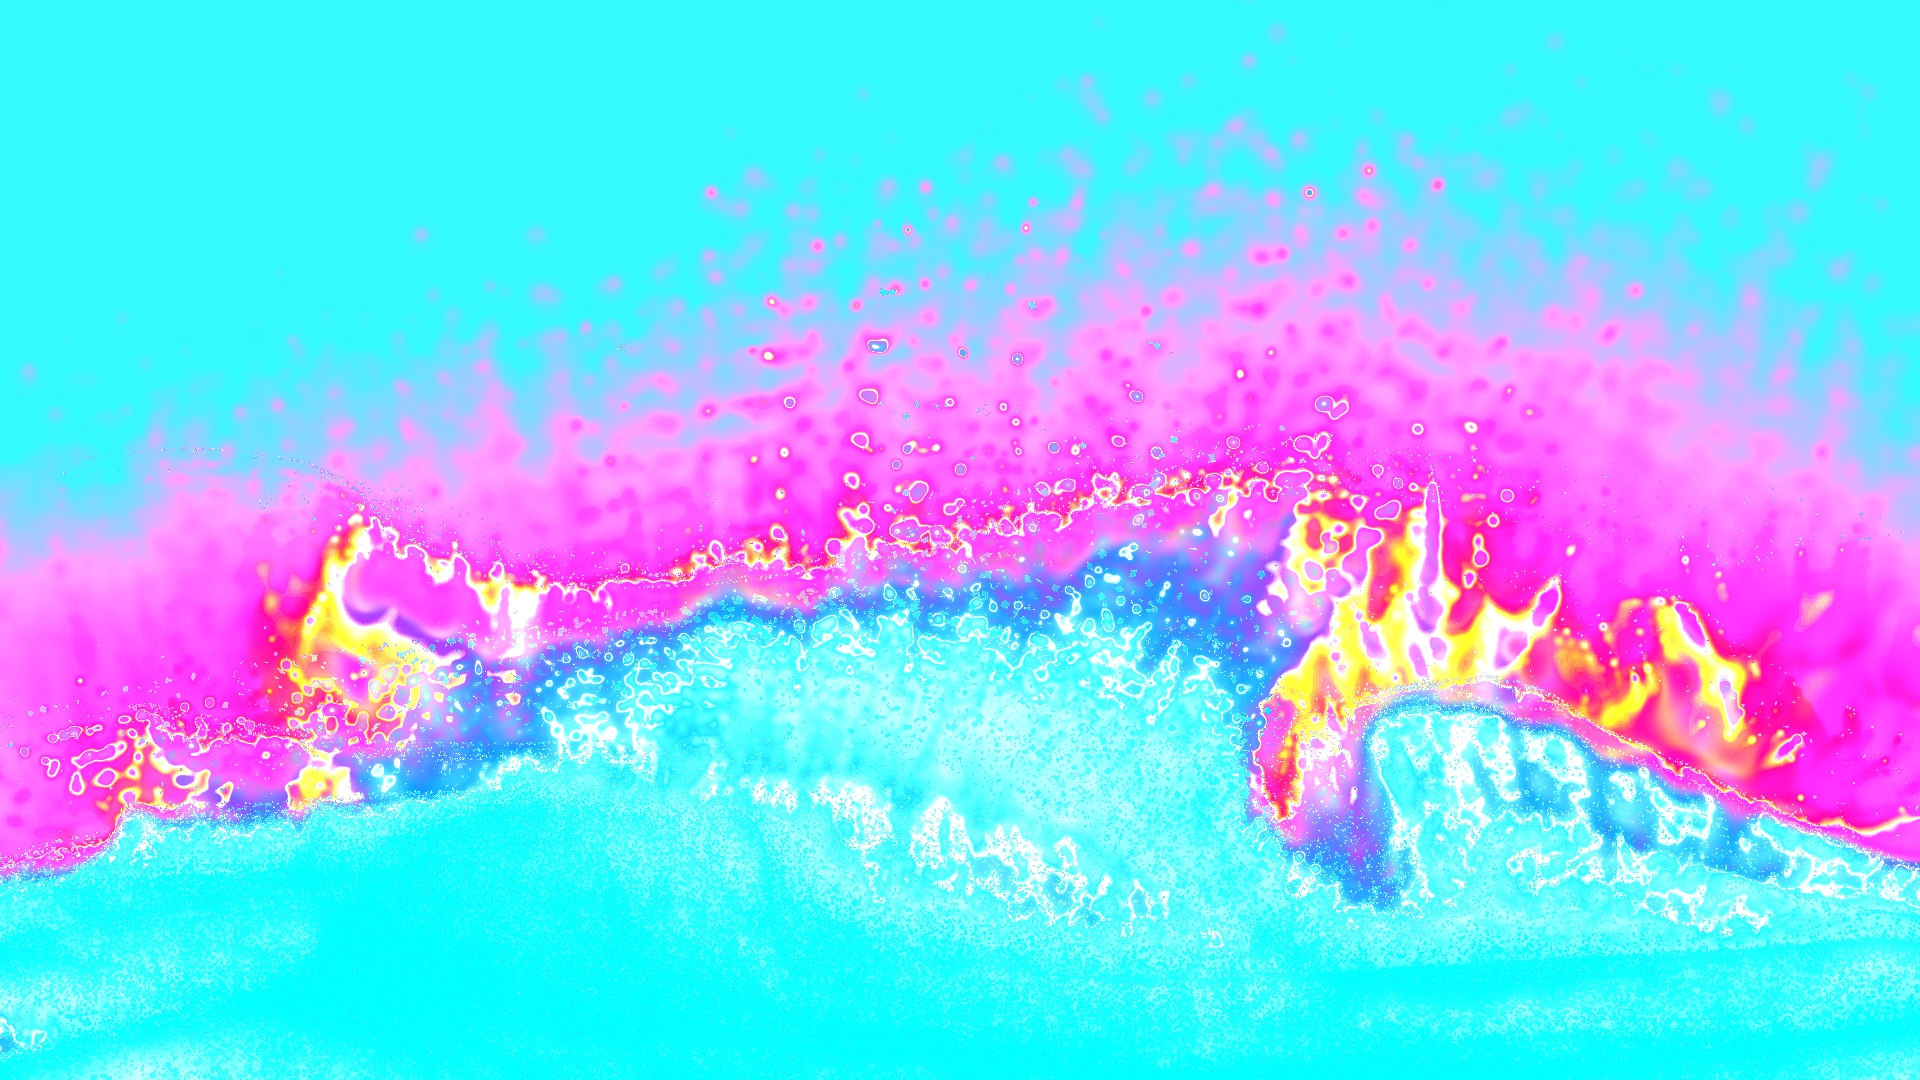 海浪，李嘉瑩，互動裝置，1920x 1081 pixels，2020